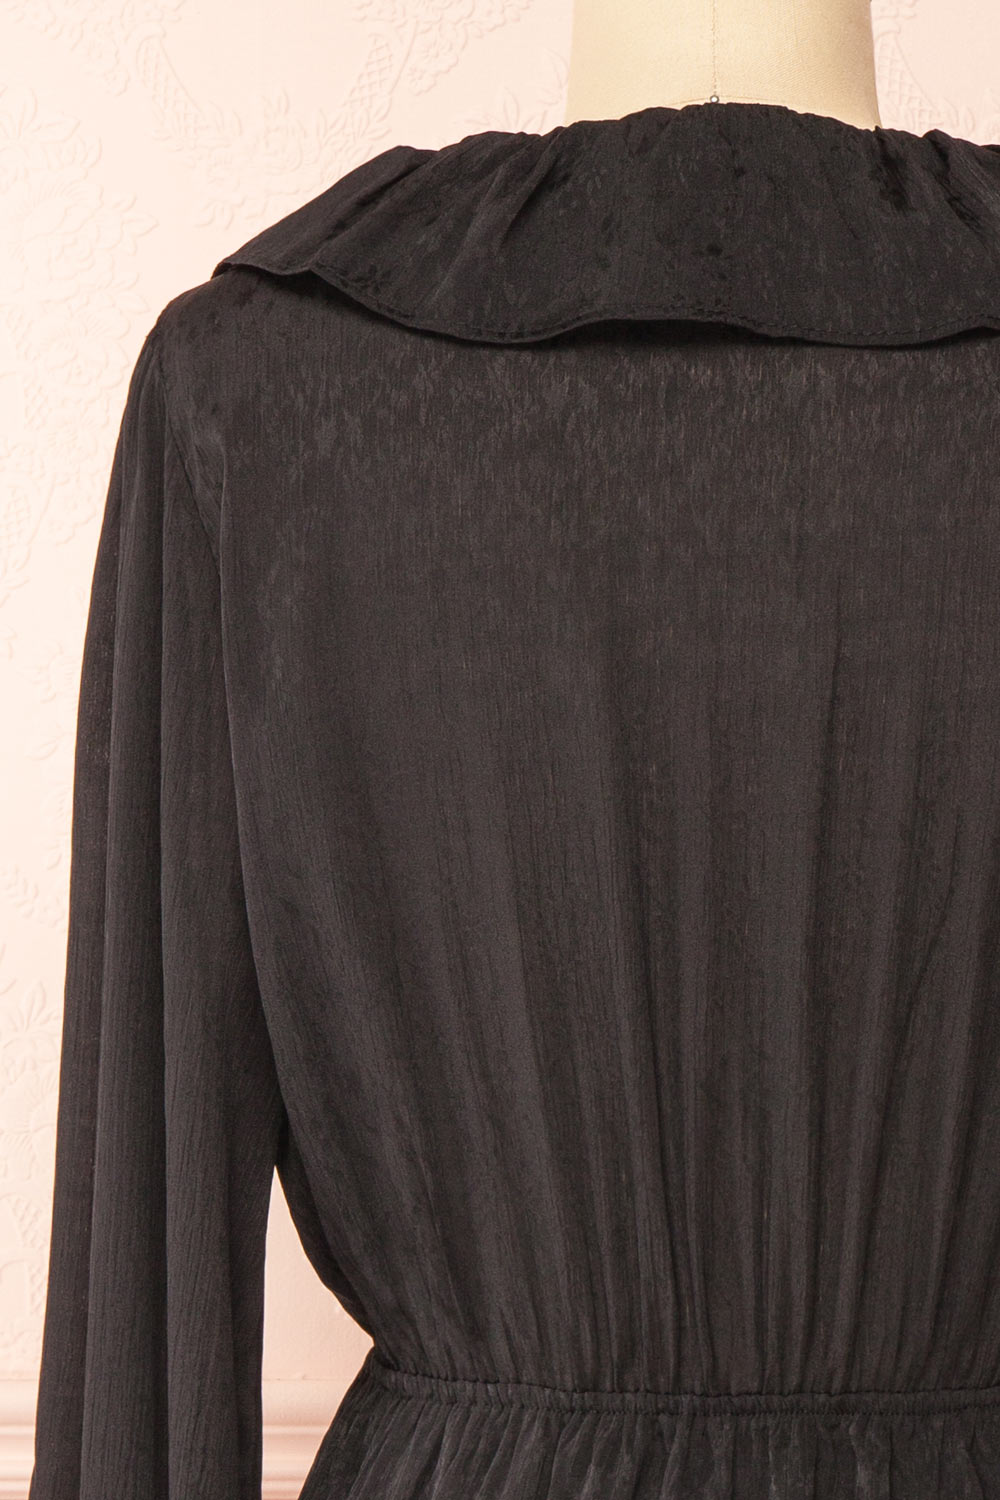 Dana Black Short Dress w/ Ruffled Neckline | Boutique 1861 back close-up